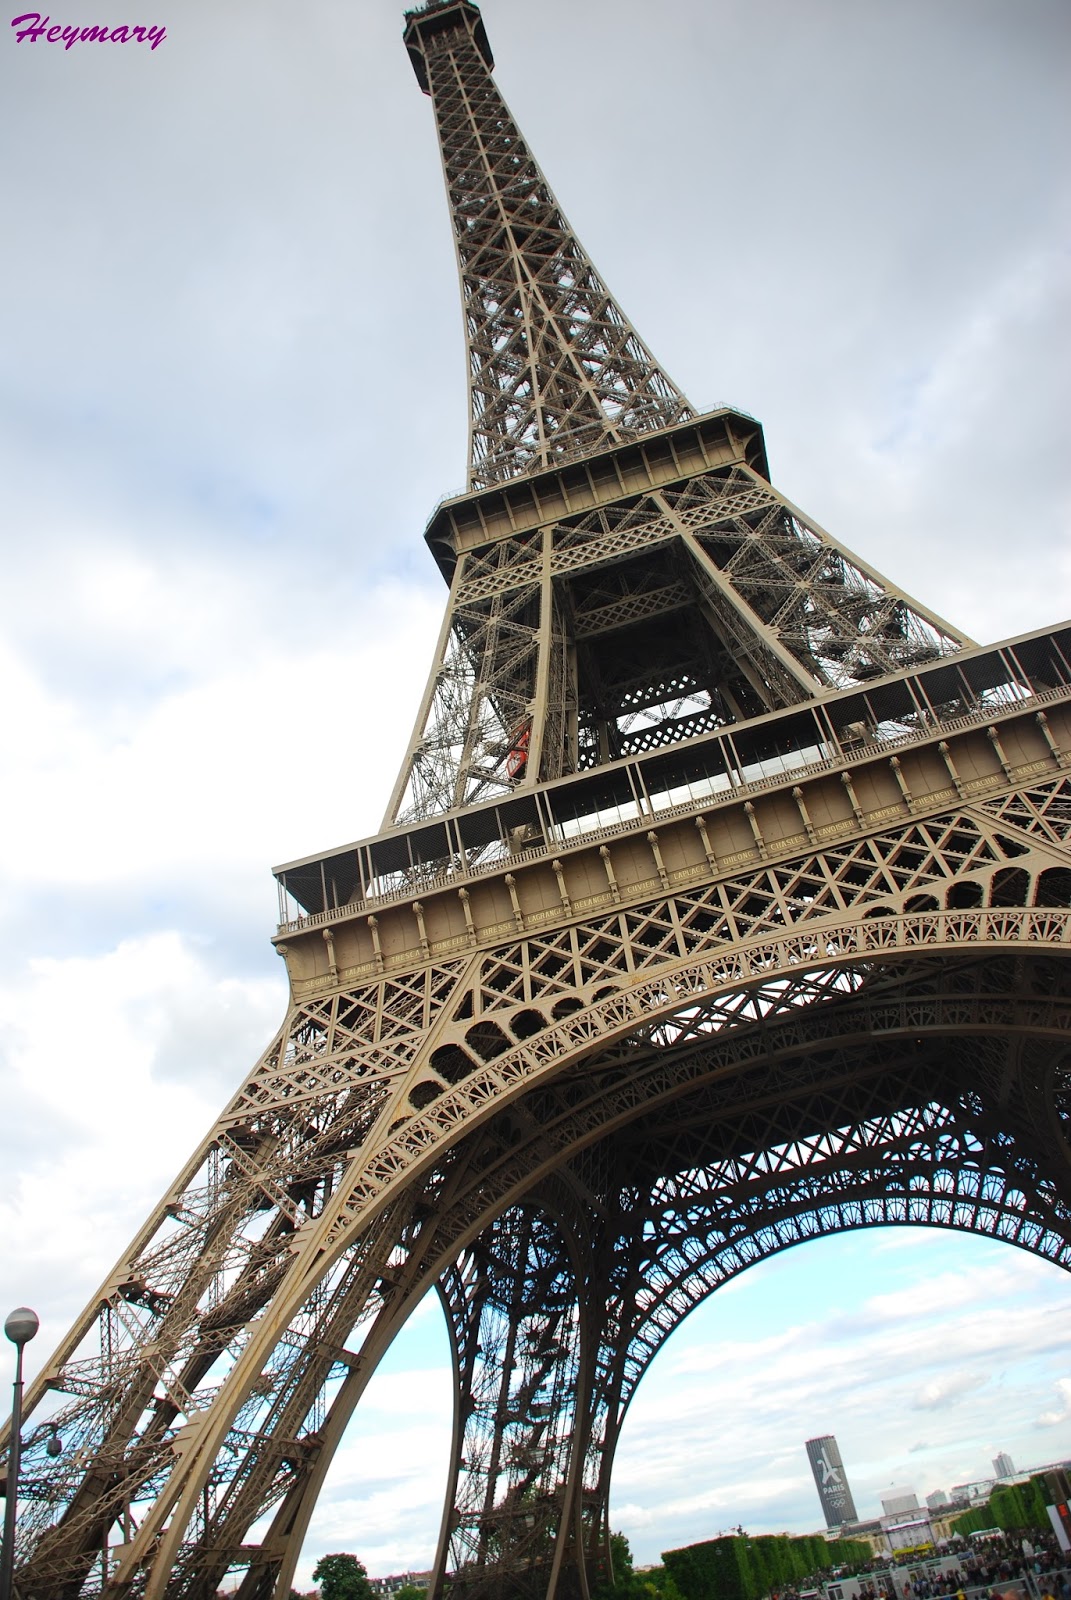 艾菲爾鐵塔Eiffel Tower 2017/05/20 1887年起建，而設計師為居斯塔夫．艾菲爾 分為三層，分別離地57.6米，115.7米，276.1米，一、二樓為餐廳，三樓為觀景台，塔座有1711級階梯，共7000噸鋼鐵，12000個金屬部件，250萬顆鉚釘，模仿人體骨頭為建，鏤空結構鐵塔，塔高300公尺，總高320公尺